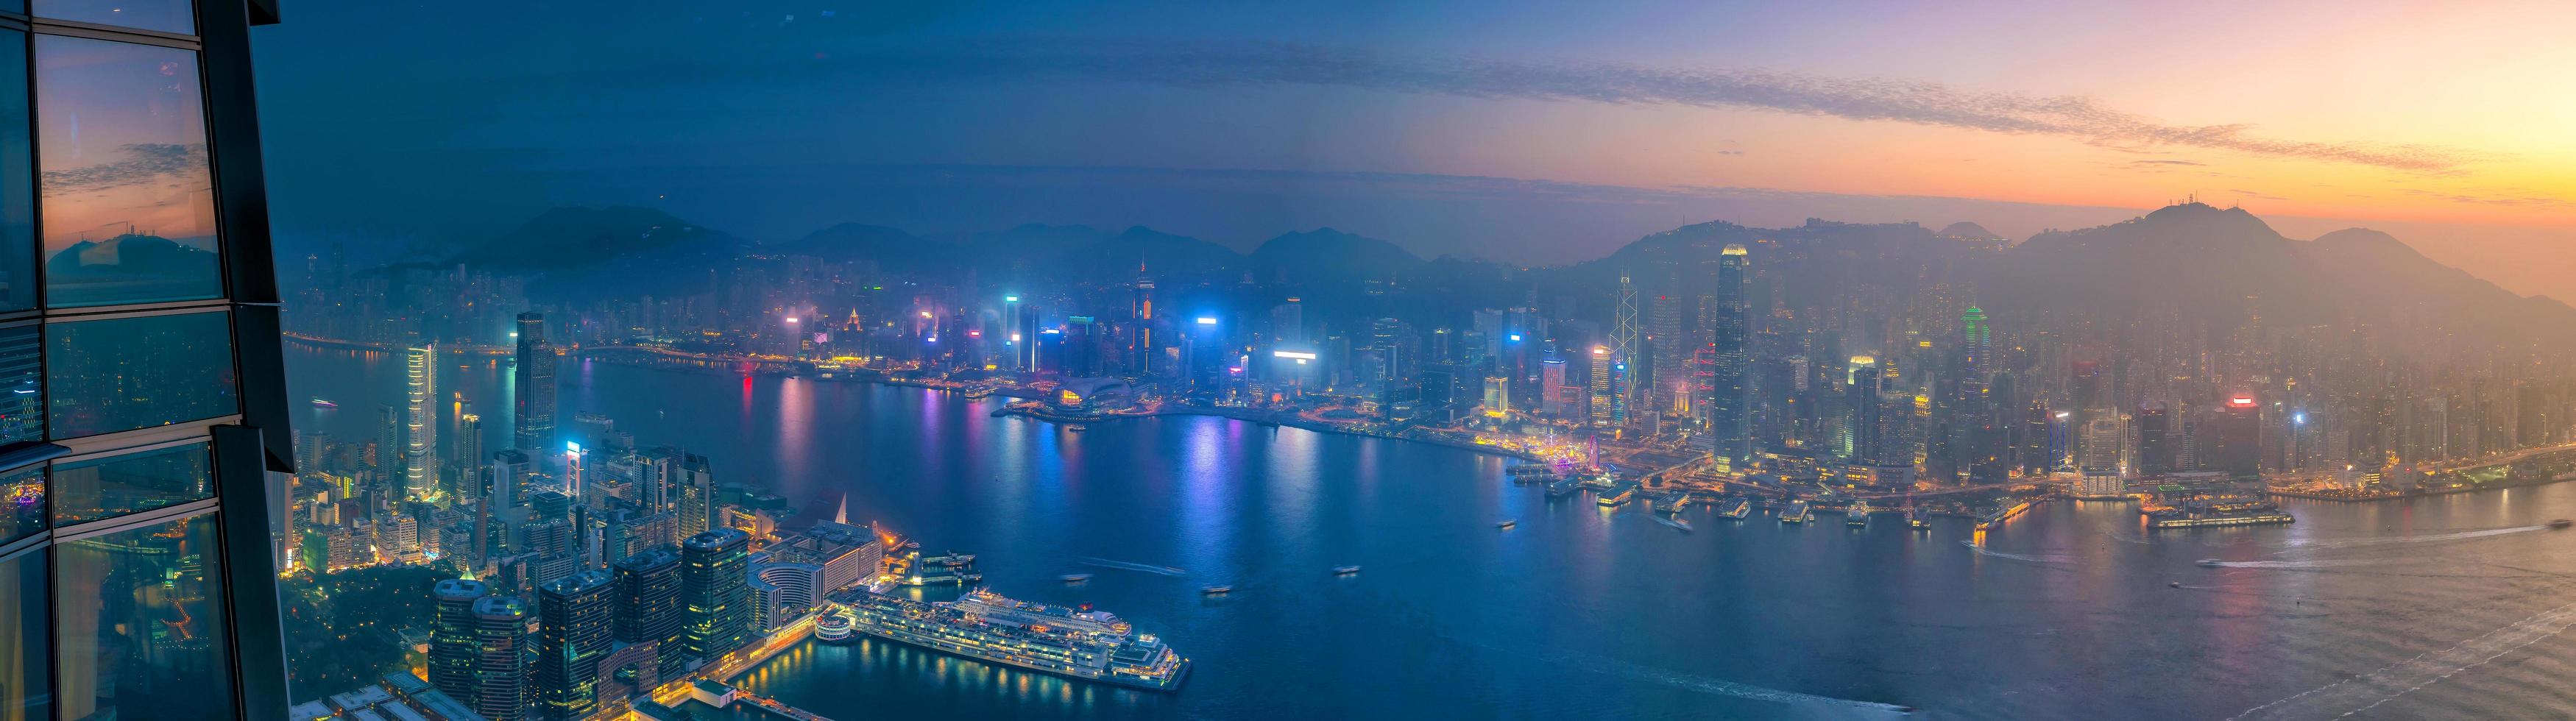 Toits de la ville de hong kong avec vue sur le port de victoria photo